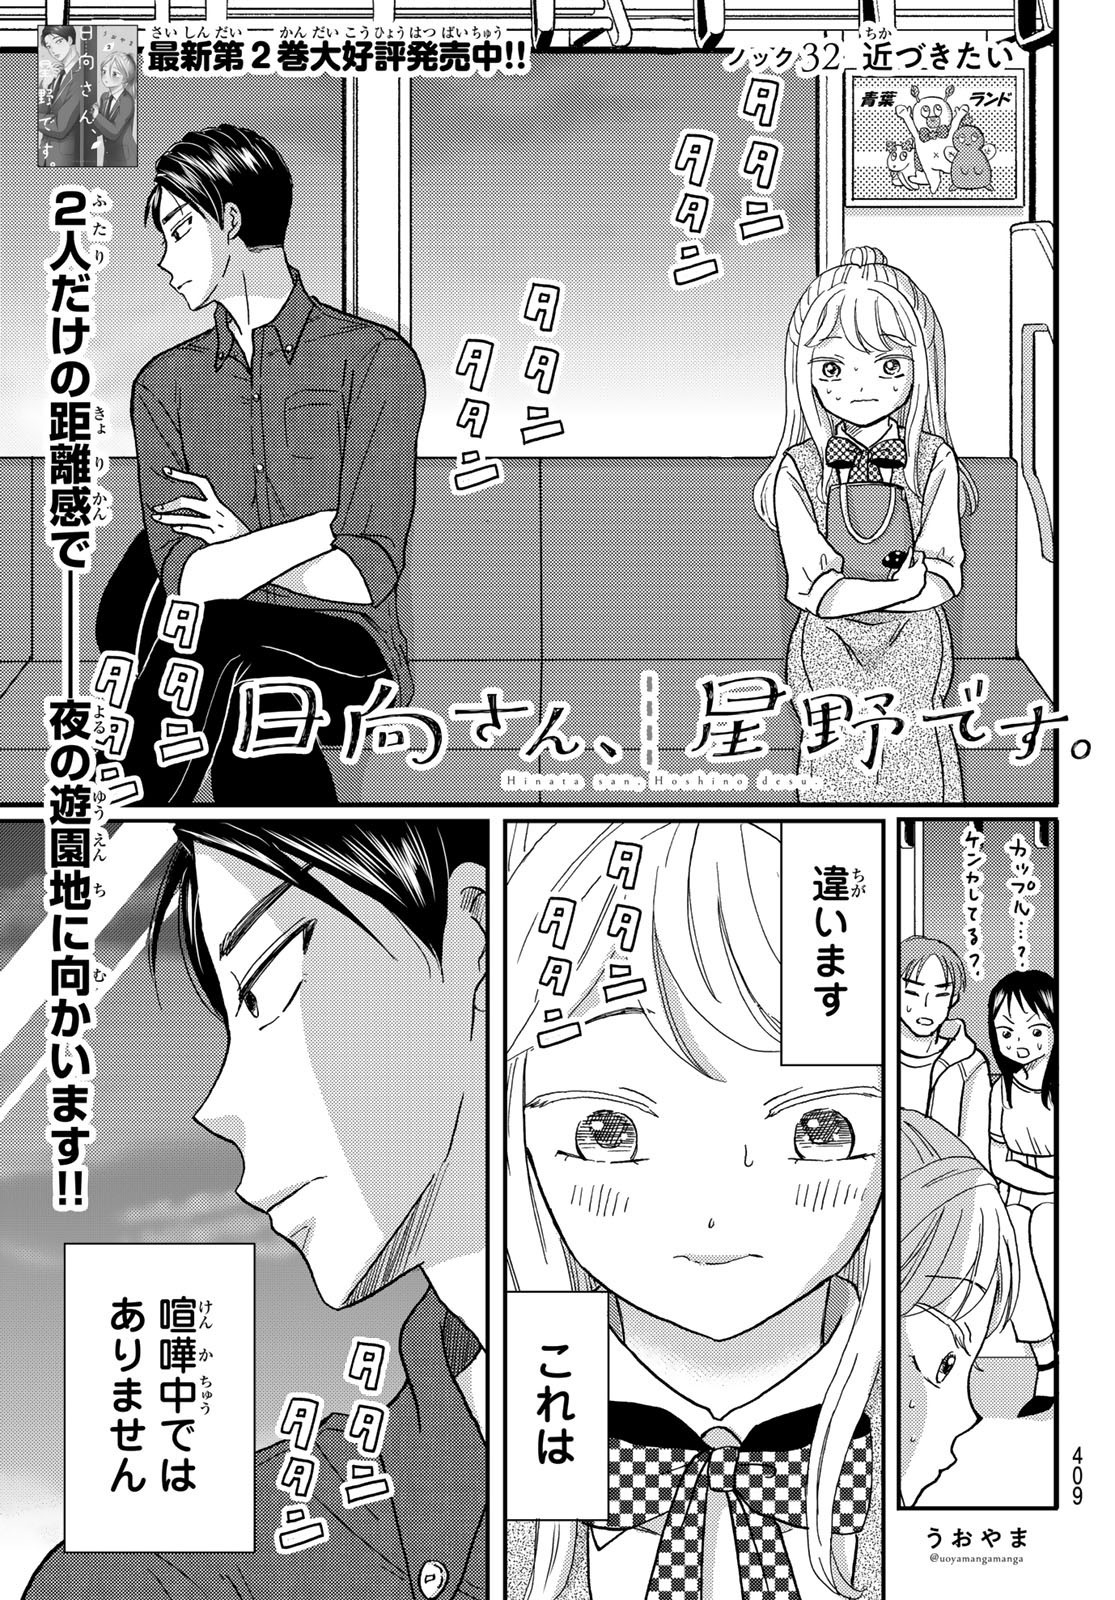 Hinata-san, Hoshino desu. - Chapter 032 - Page 1